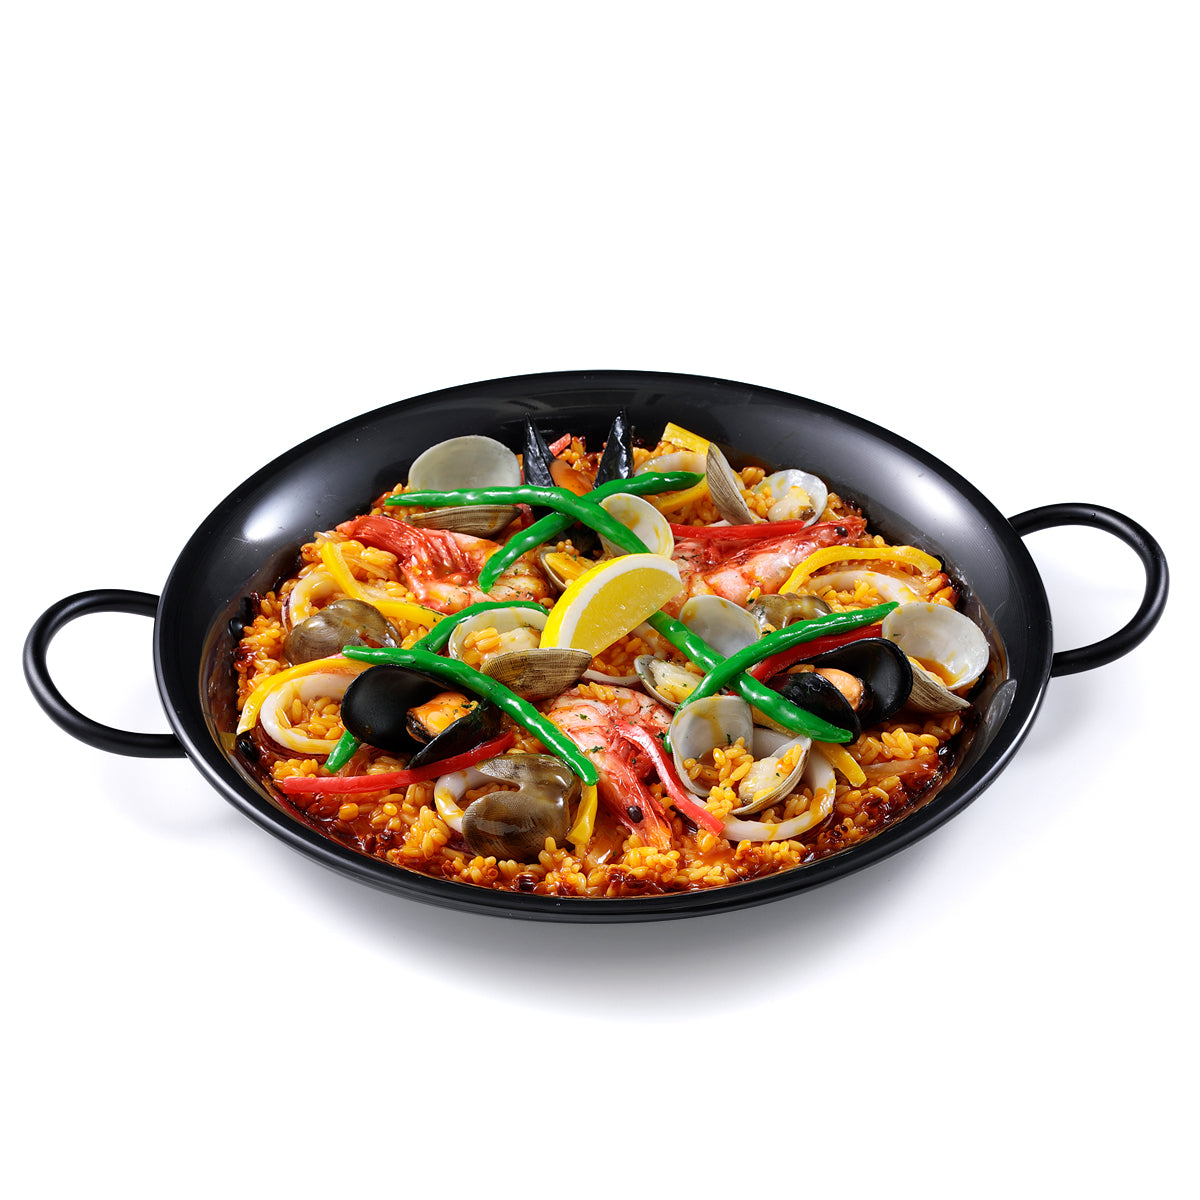 オリジナル食品サンプル「パエリア」の商品画像です。(英語表記) paella